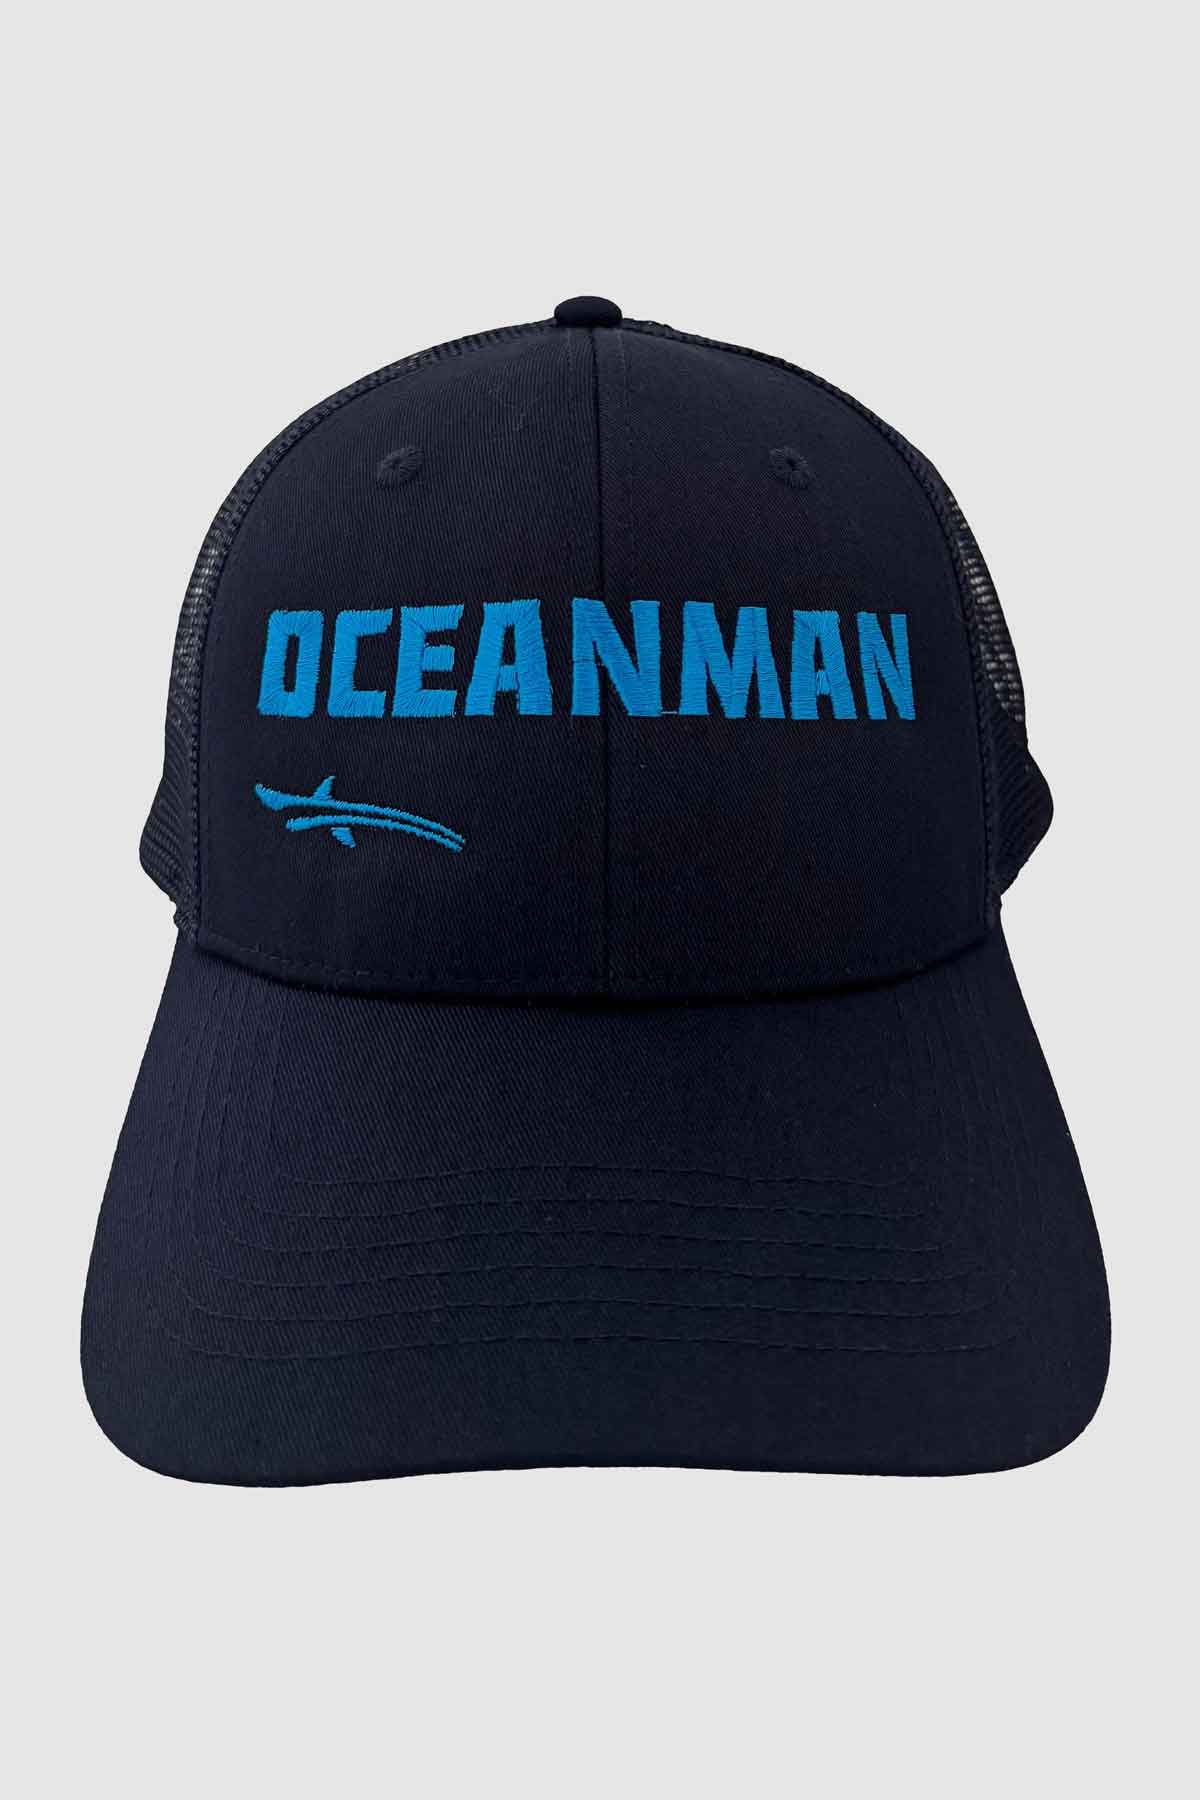 Oceanman cap nequen black and blue